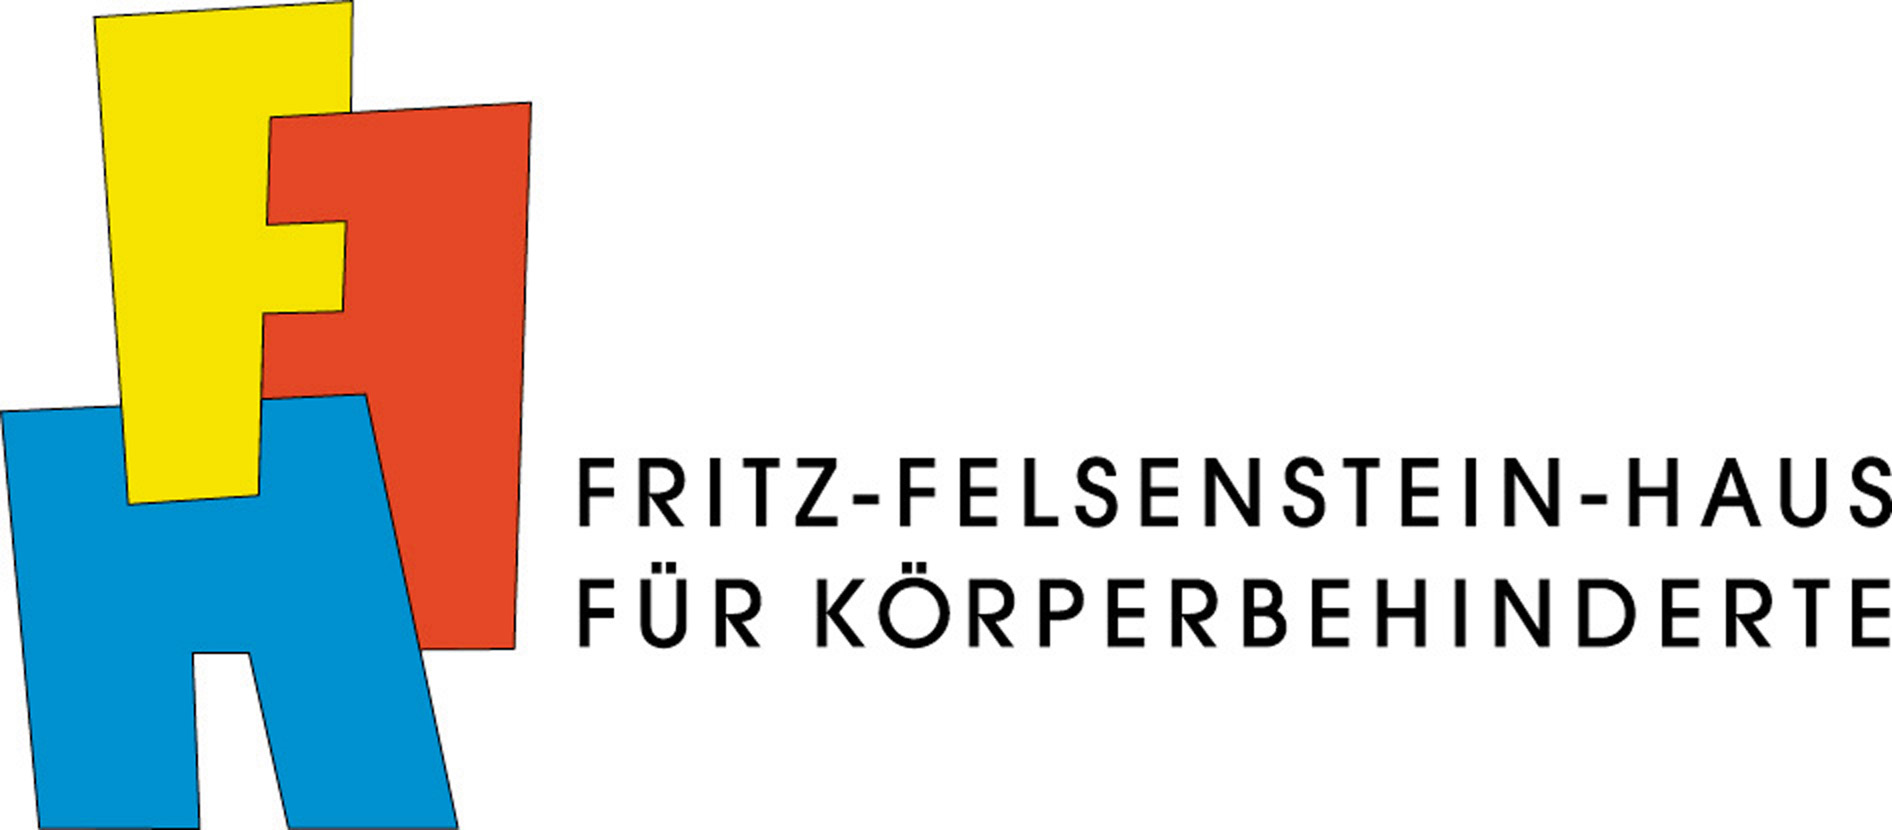 Fritz-Felsenstein-Haus